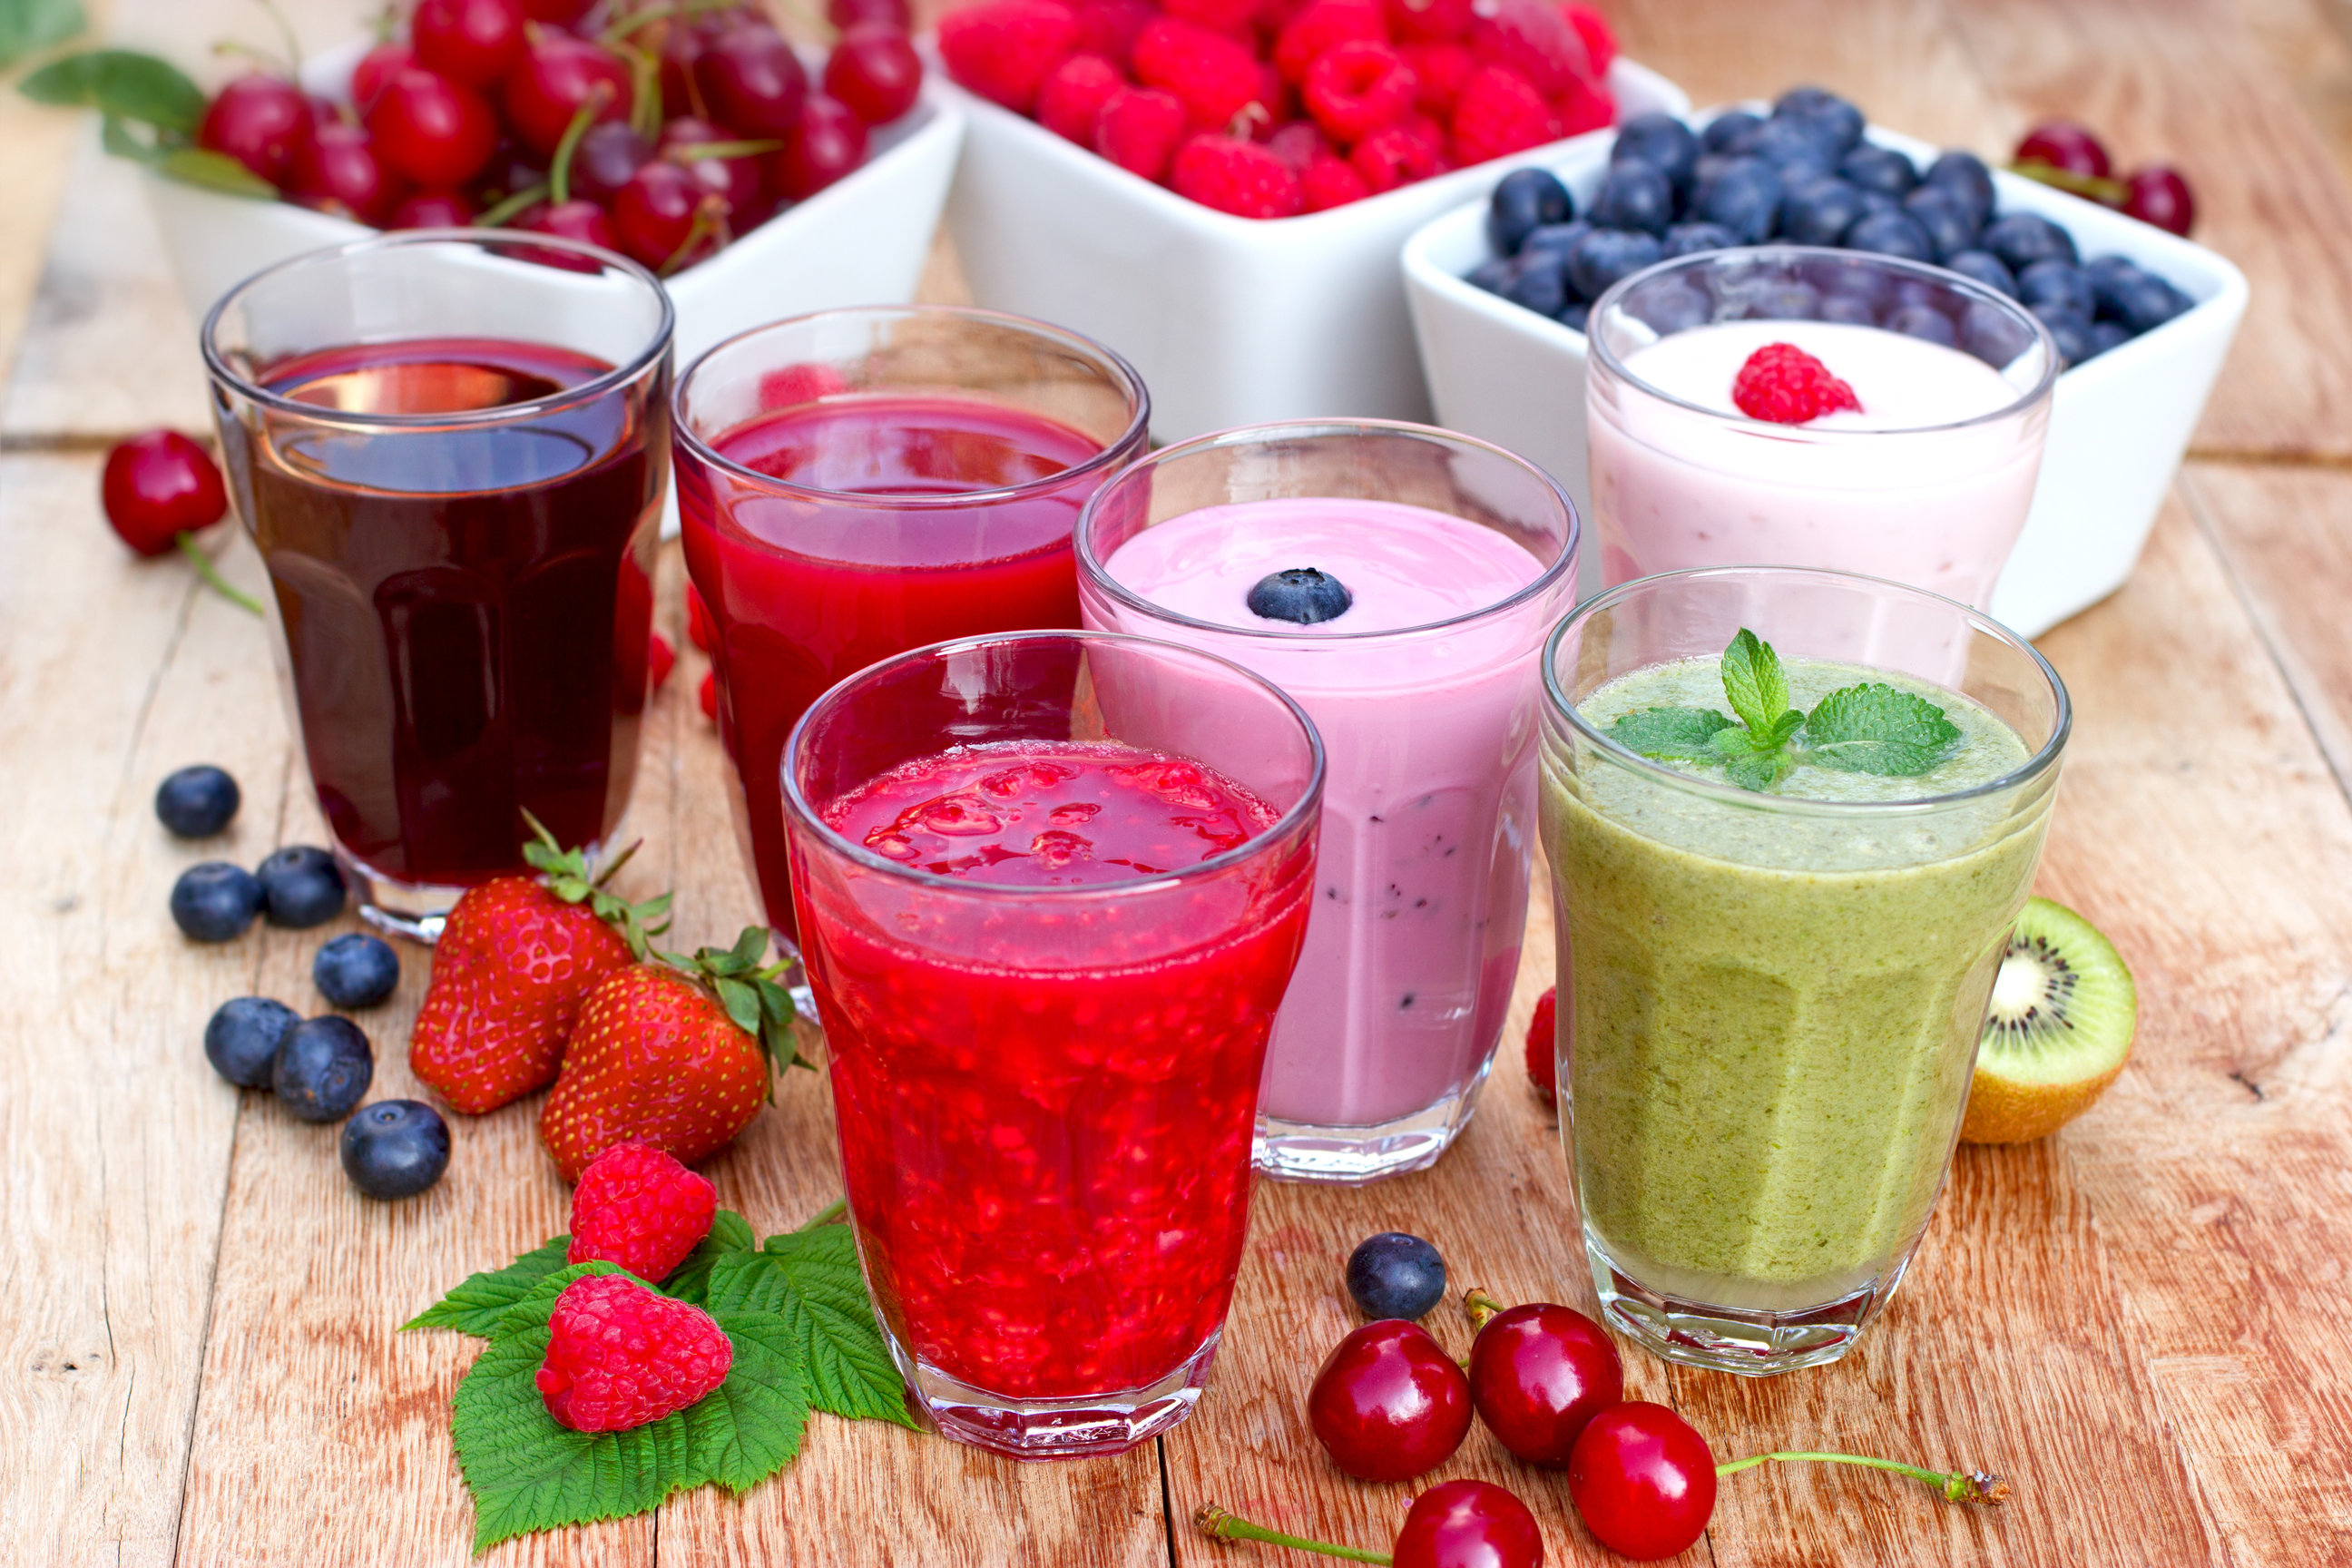 Organic smoothies, fruit yogurt and juices